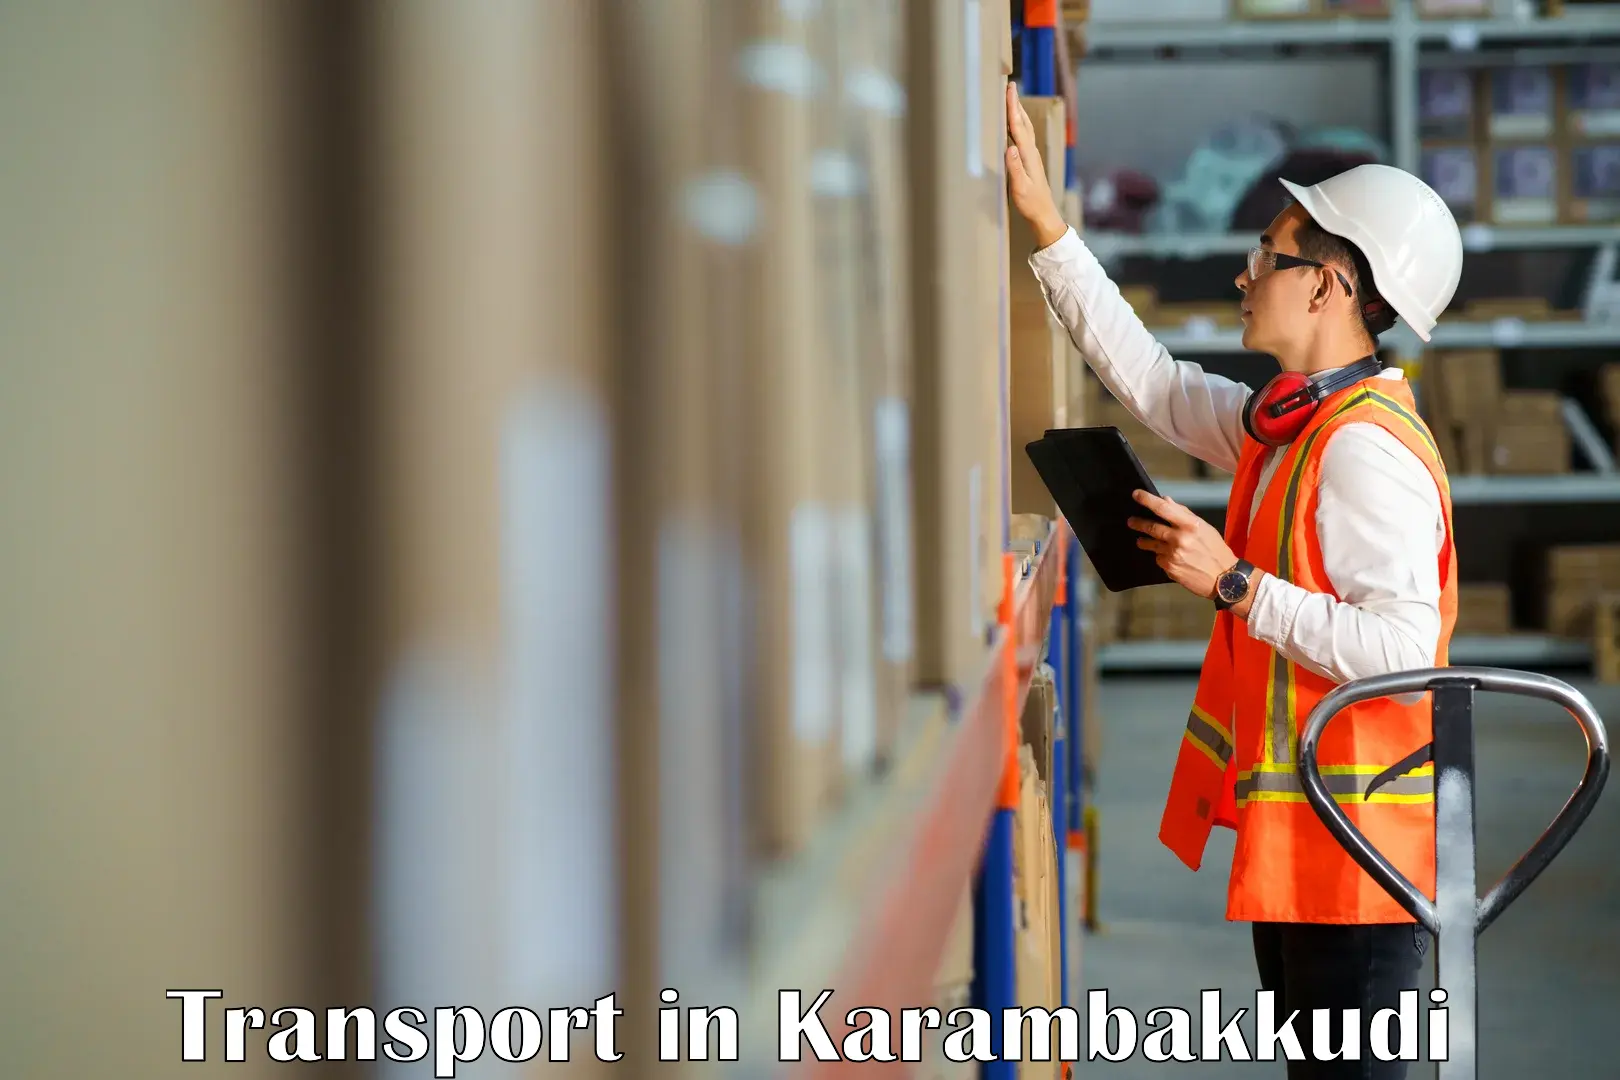 Domestic transport services in Karambakkudi